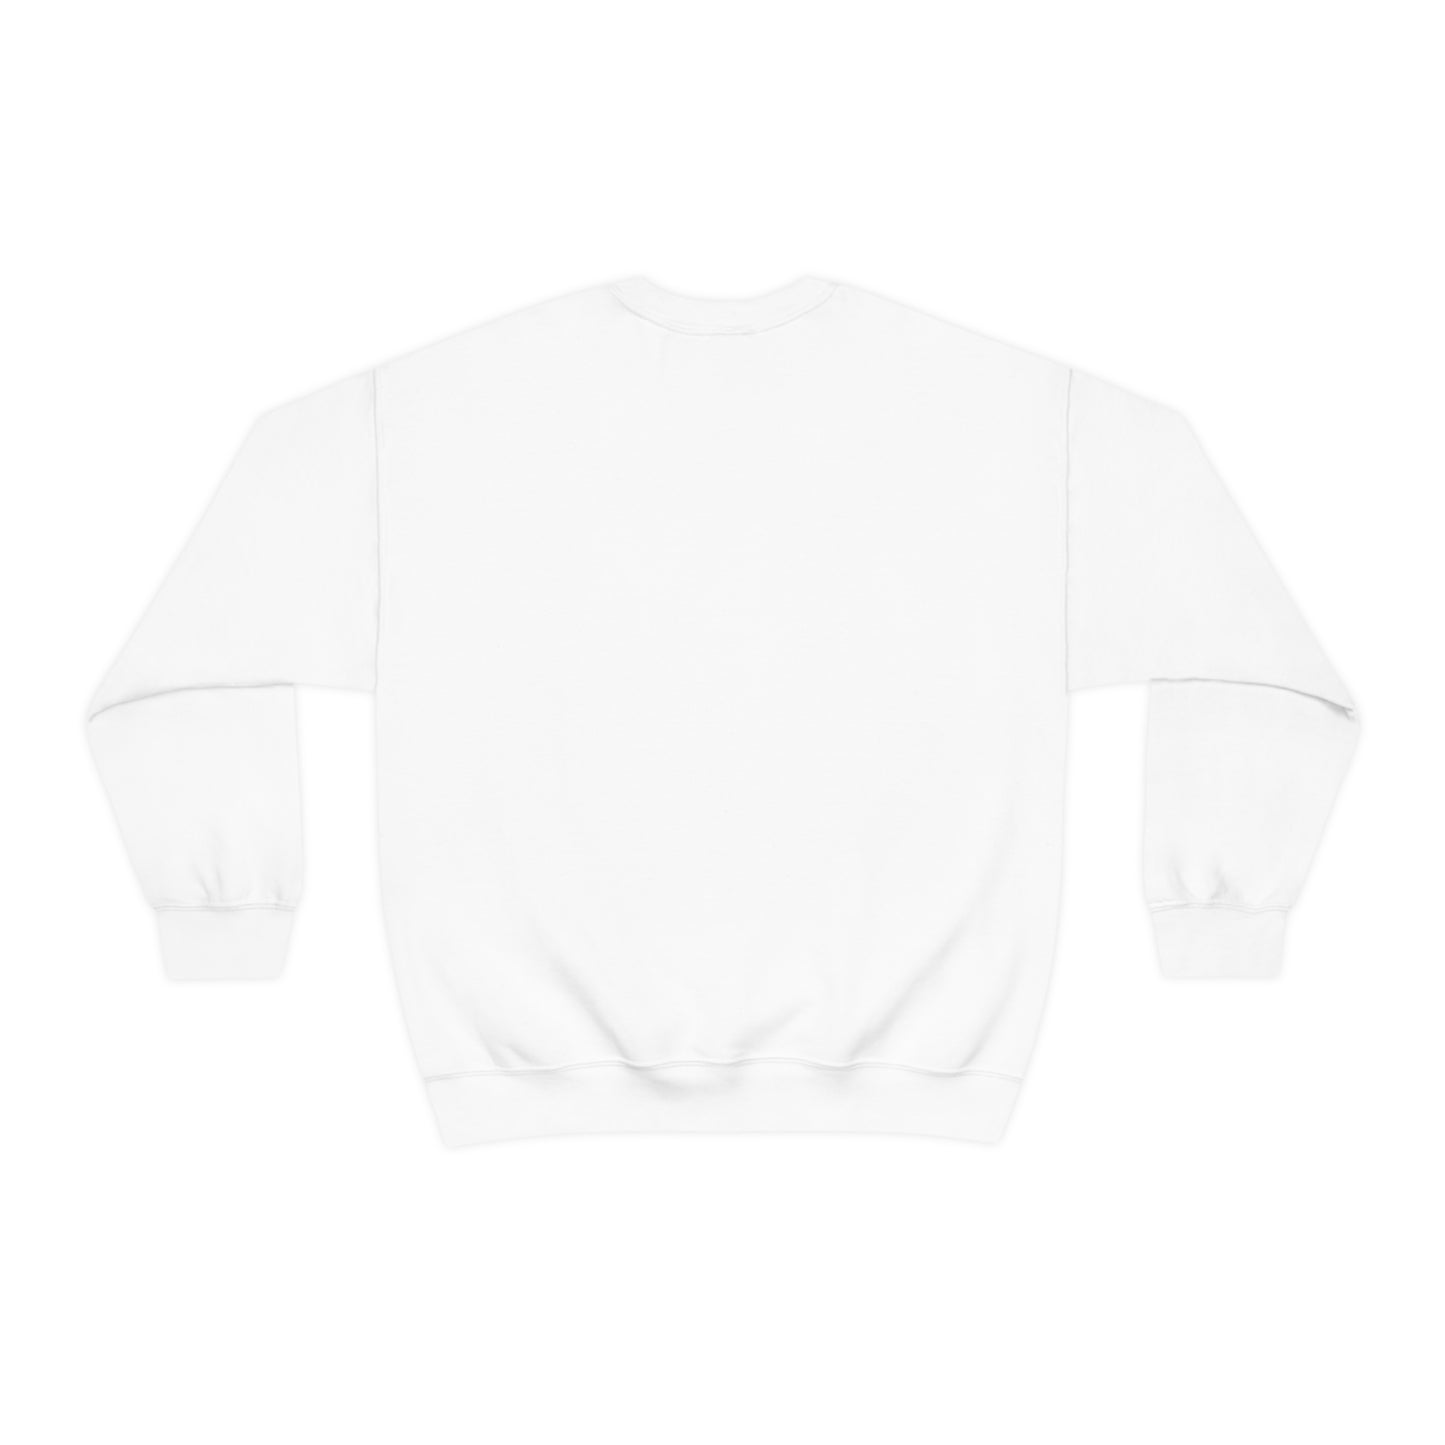 large cc logo sweatshirt